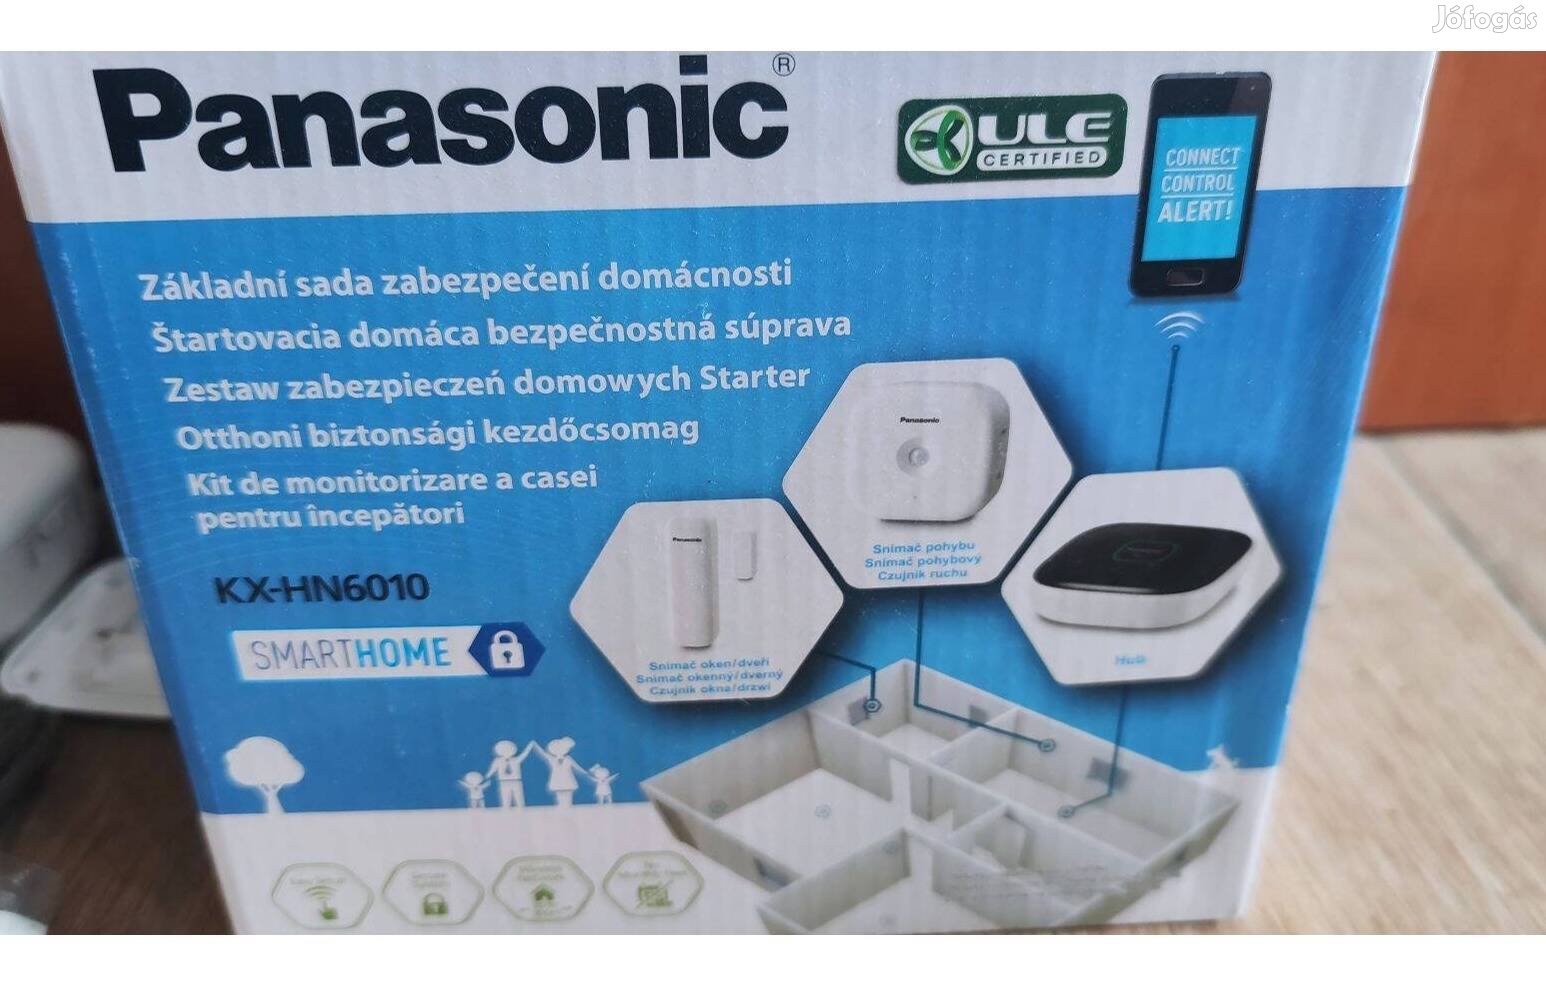 Panasonic Kx-HN6010 otthoni biztonsági kezdőcsomag